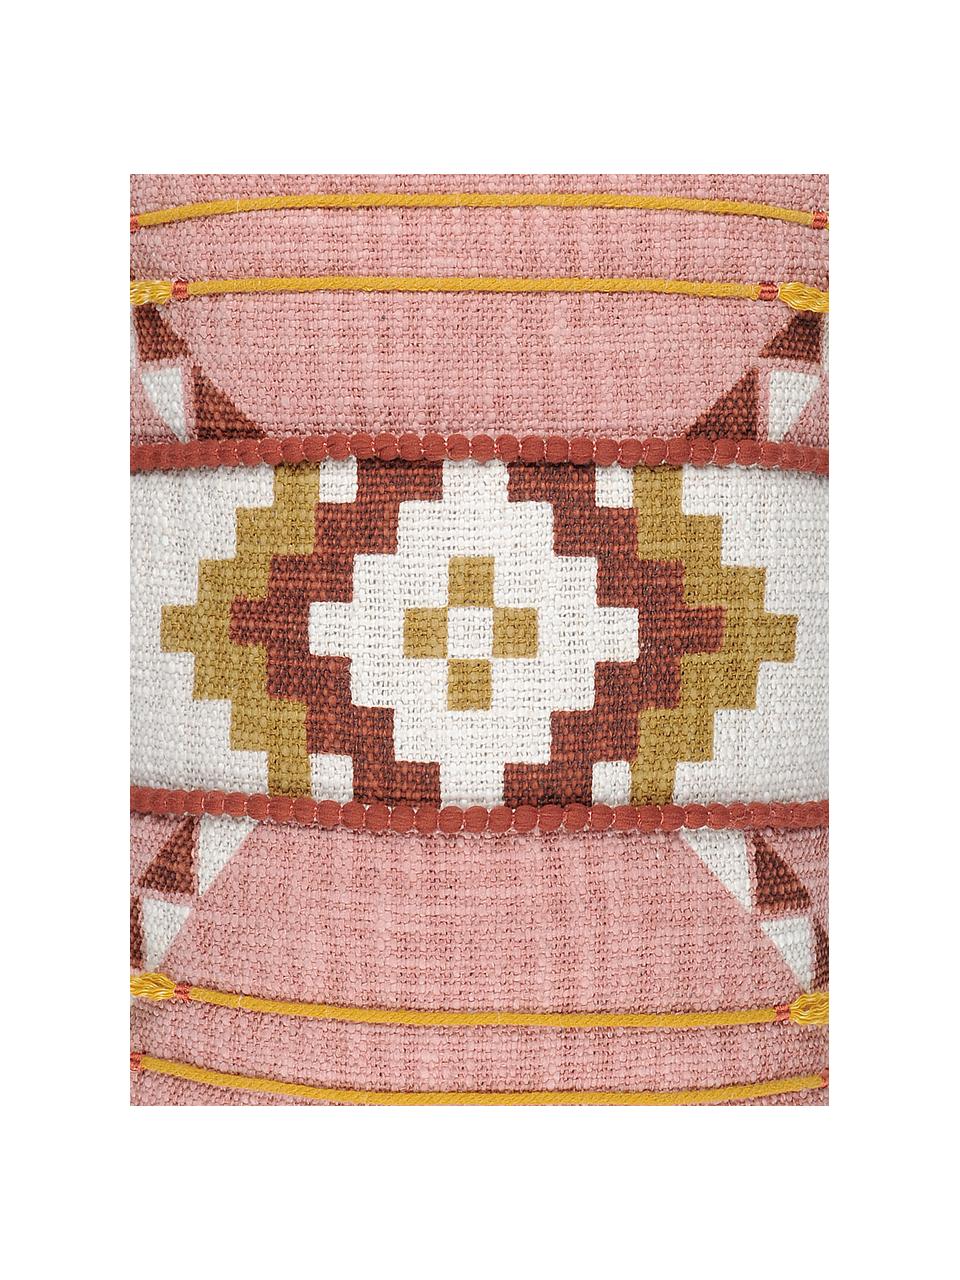 Kissenhülle Puebla mit sommerlichem Ethnomuster, 100% Baumwolle, Rosa, Gelb, Dunkelrot, Weiß, 30 x 50 cm